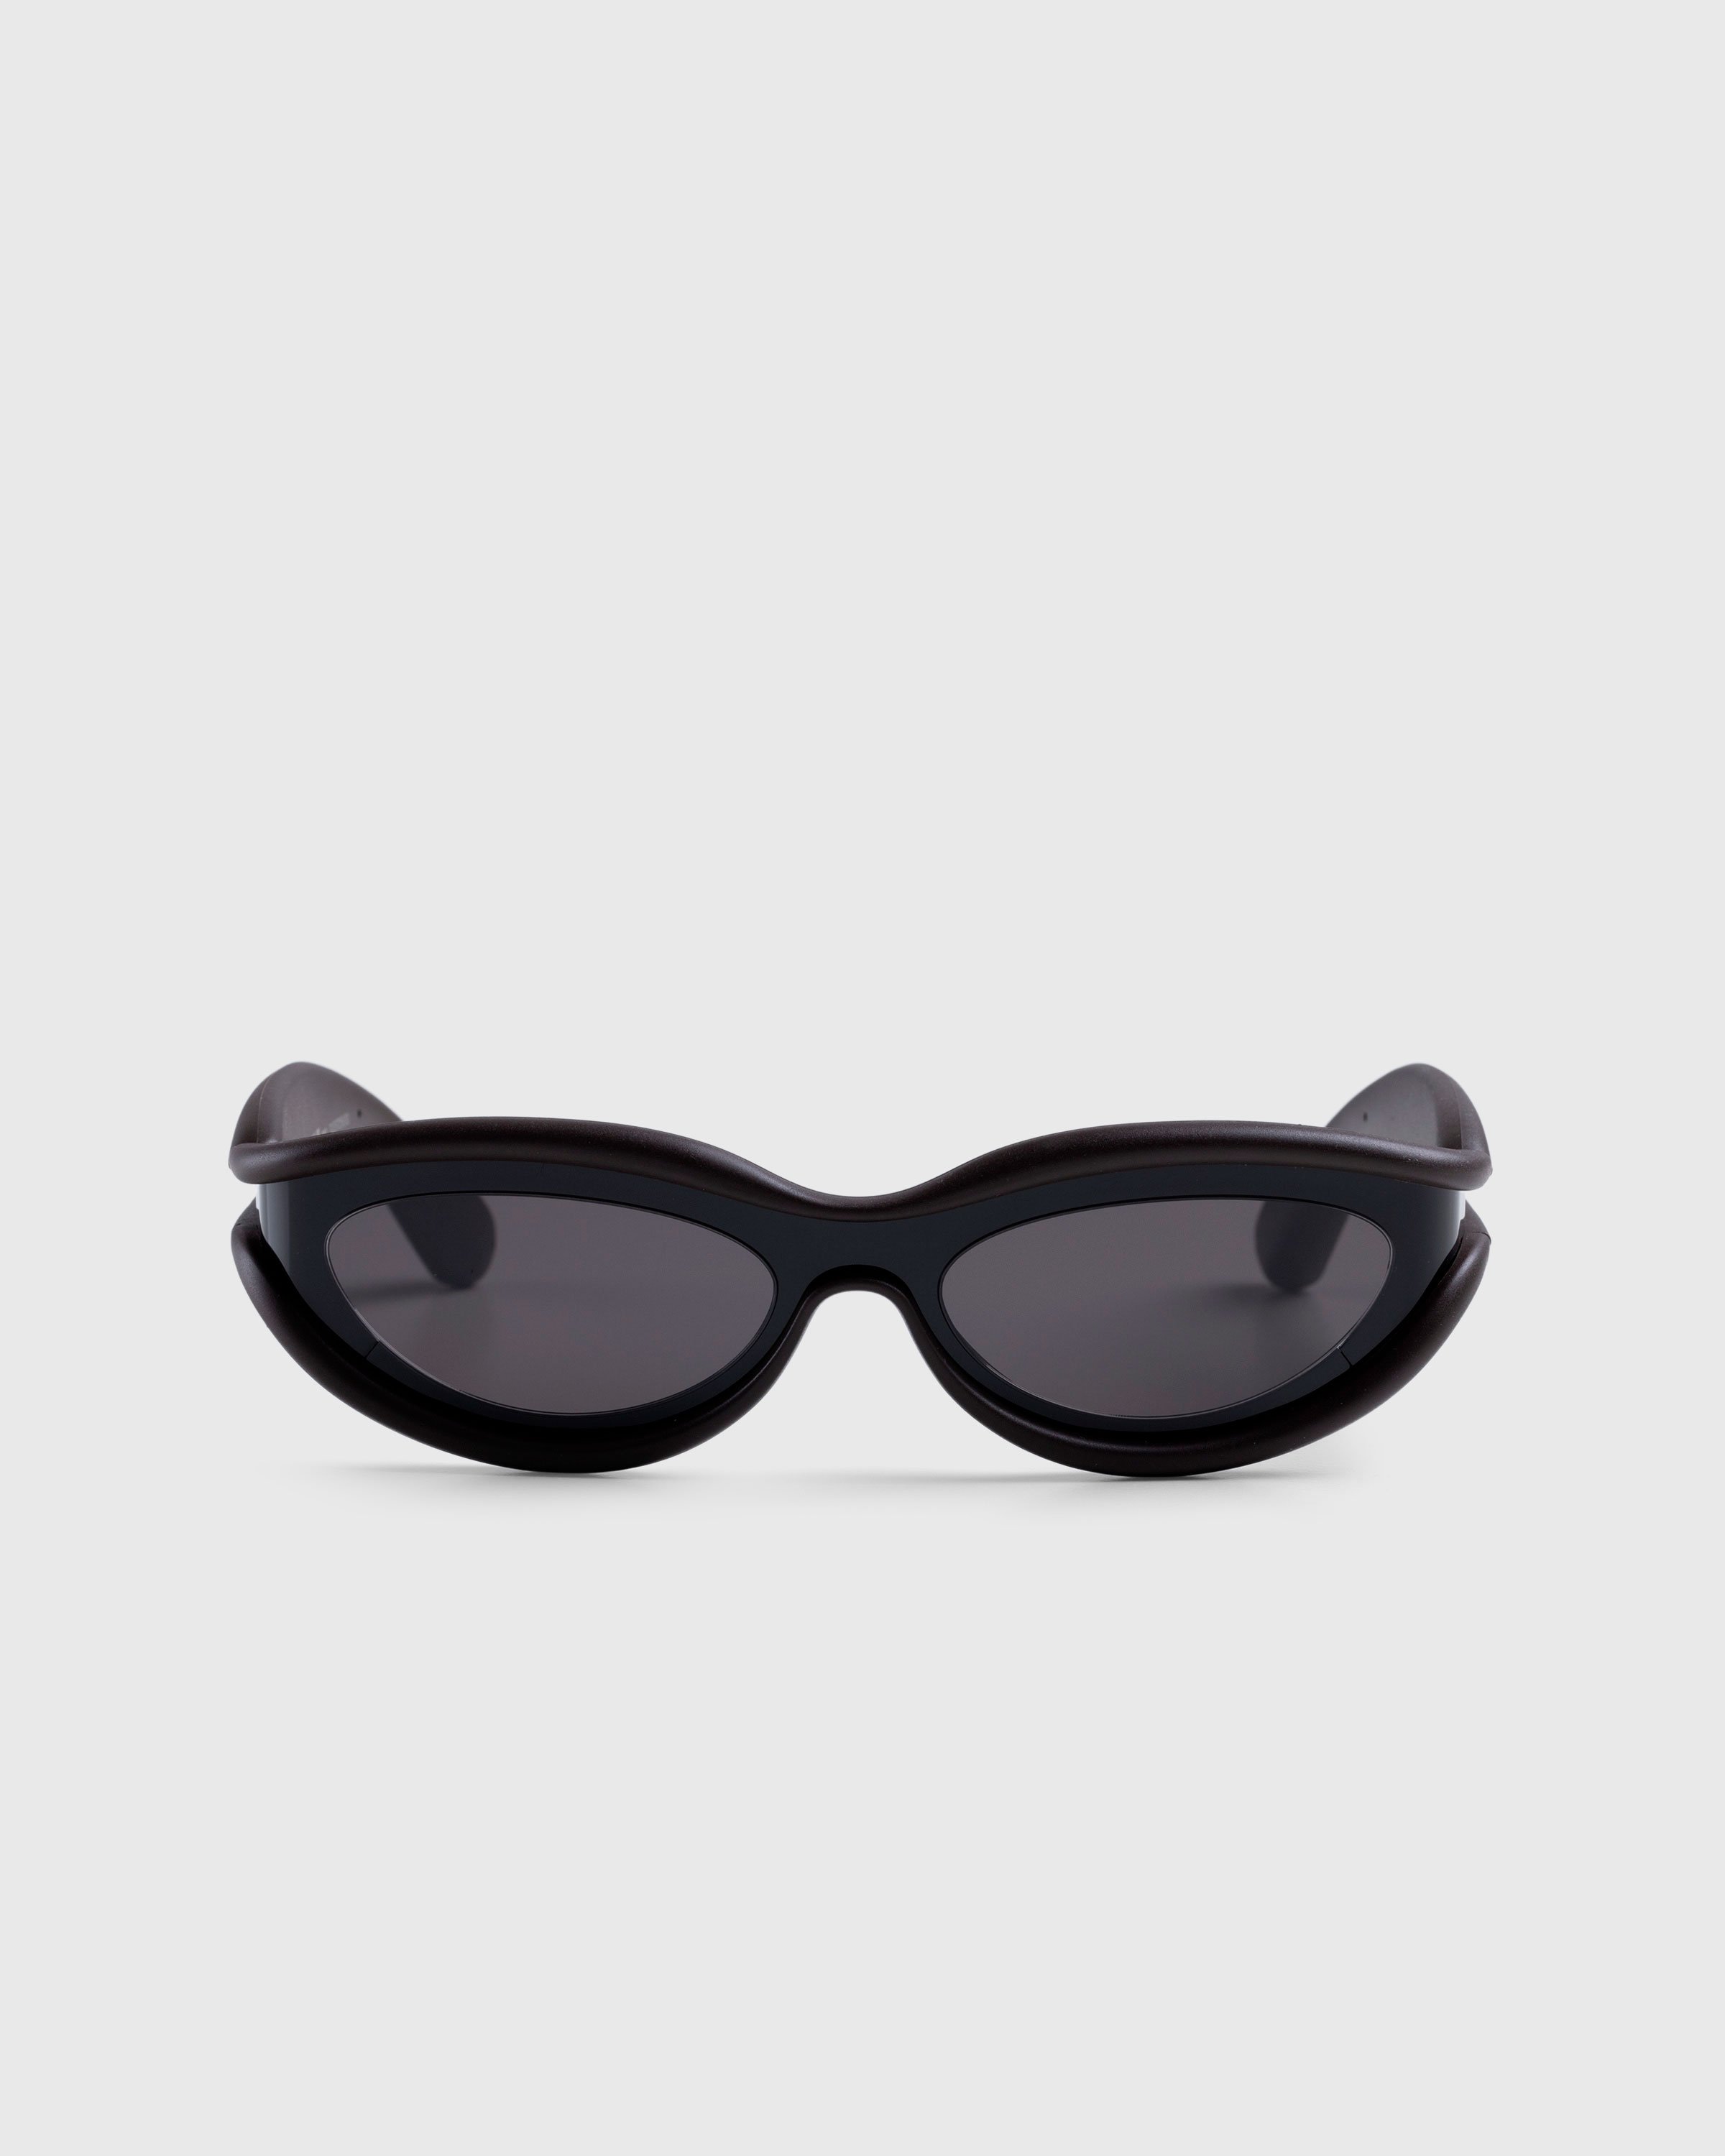 Bottega Veneta - Unapologetic Sunglasses Black - Accessories - Black - Image 1